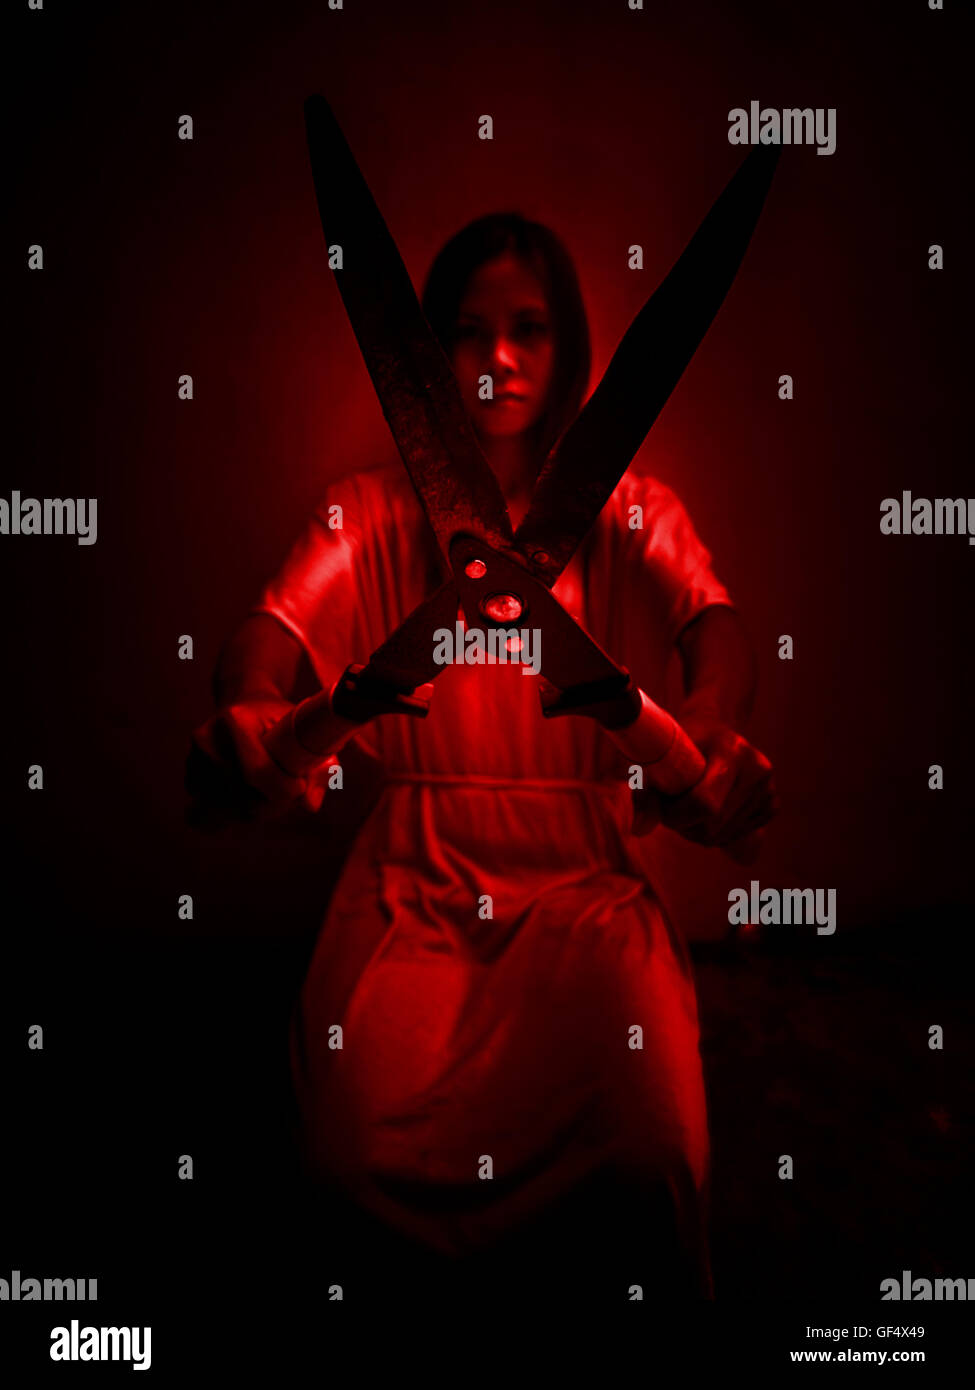 Horror-Szene Frau mit Rasen-Scheren, Serienmörder oder Gewalt Konzept Hintergrund Stockfoto